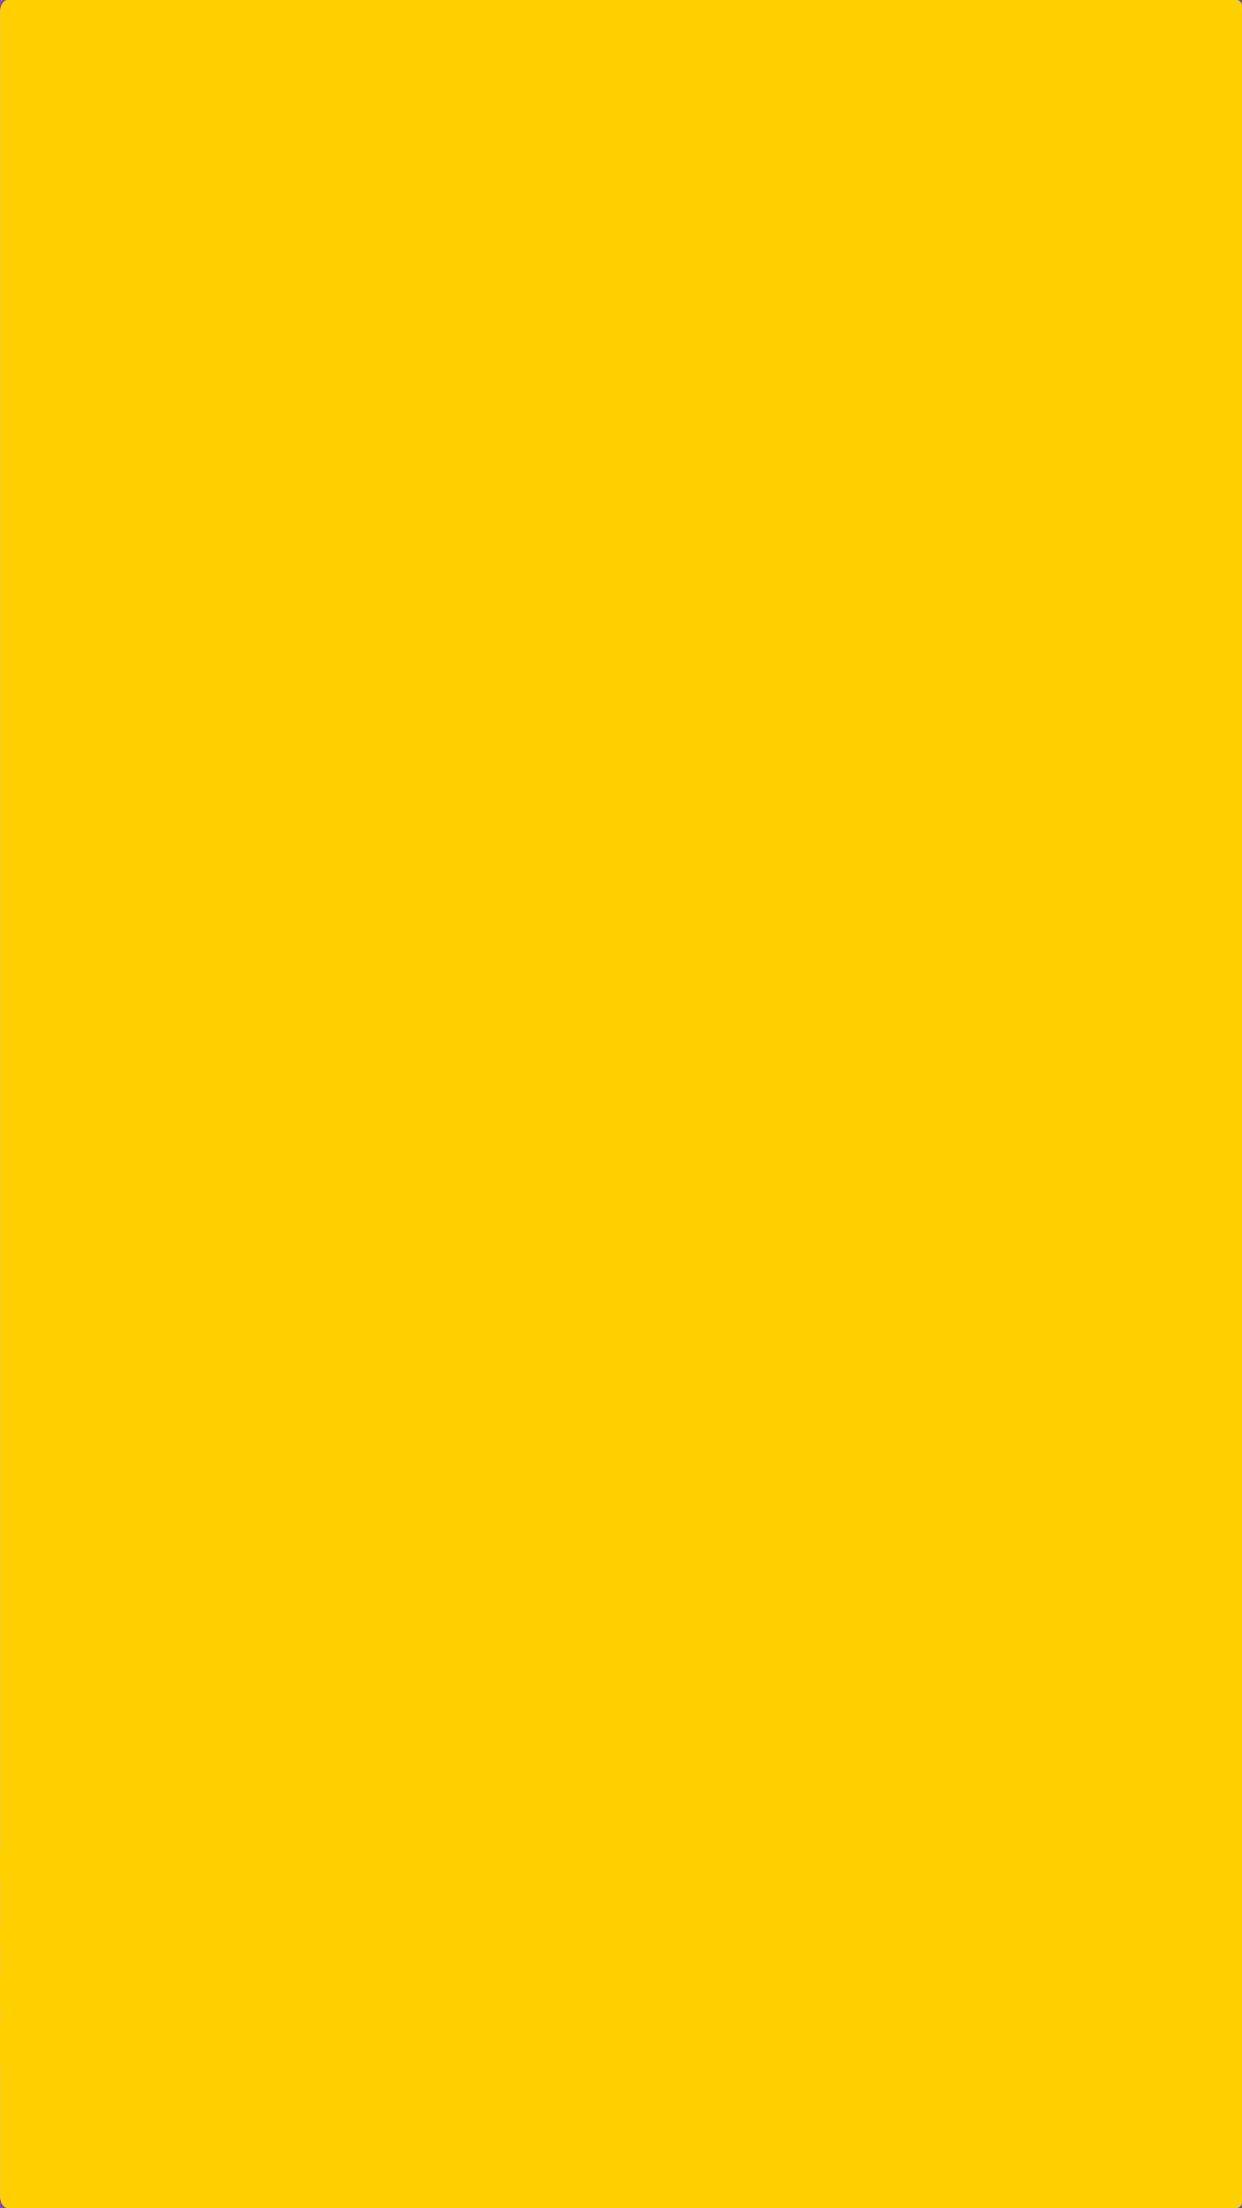 1242x2208 Tải xuống 10 màu đồng nhất Hình nền iPhone: Đen, Trắng